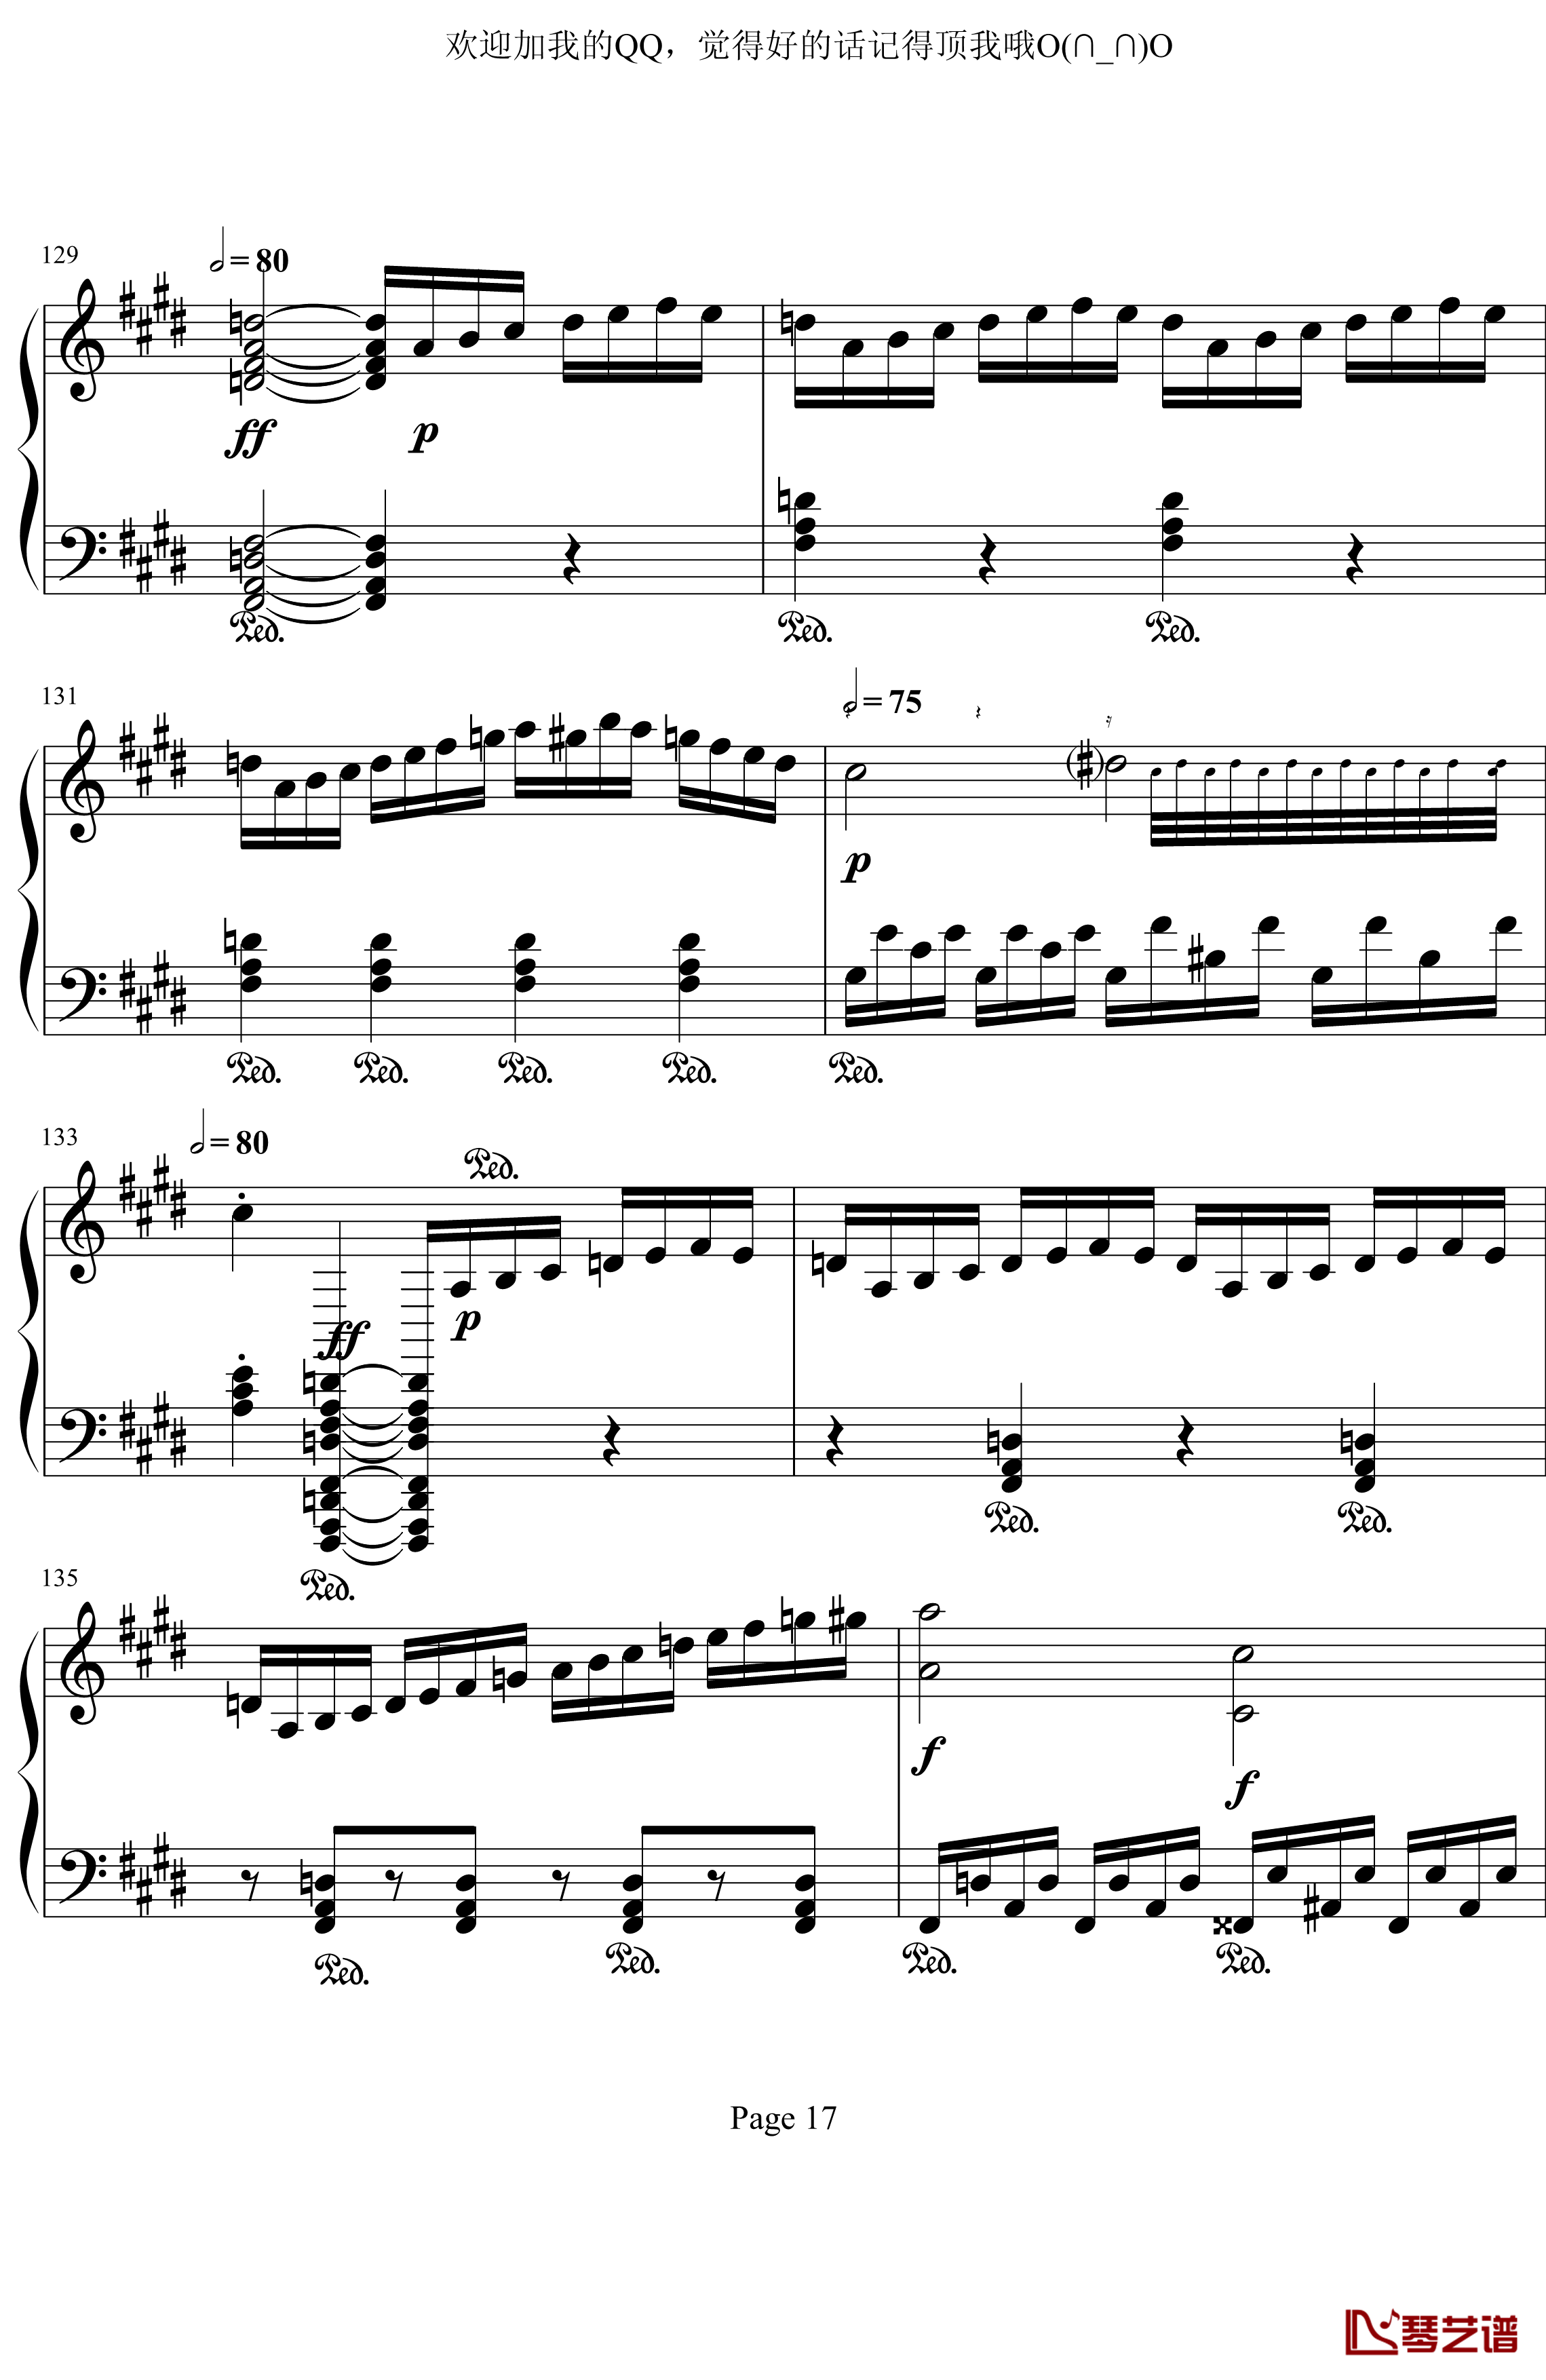 月光奏鸣曲第三乐章钢琴谱-贝多芬-beethoven17